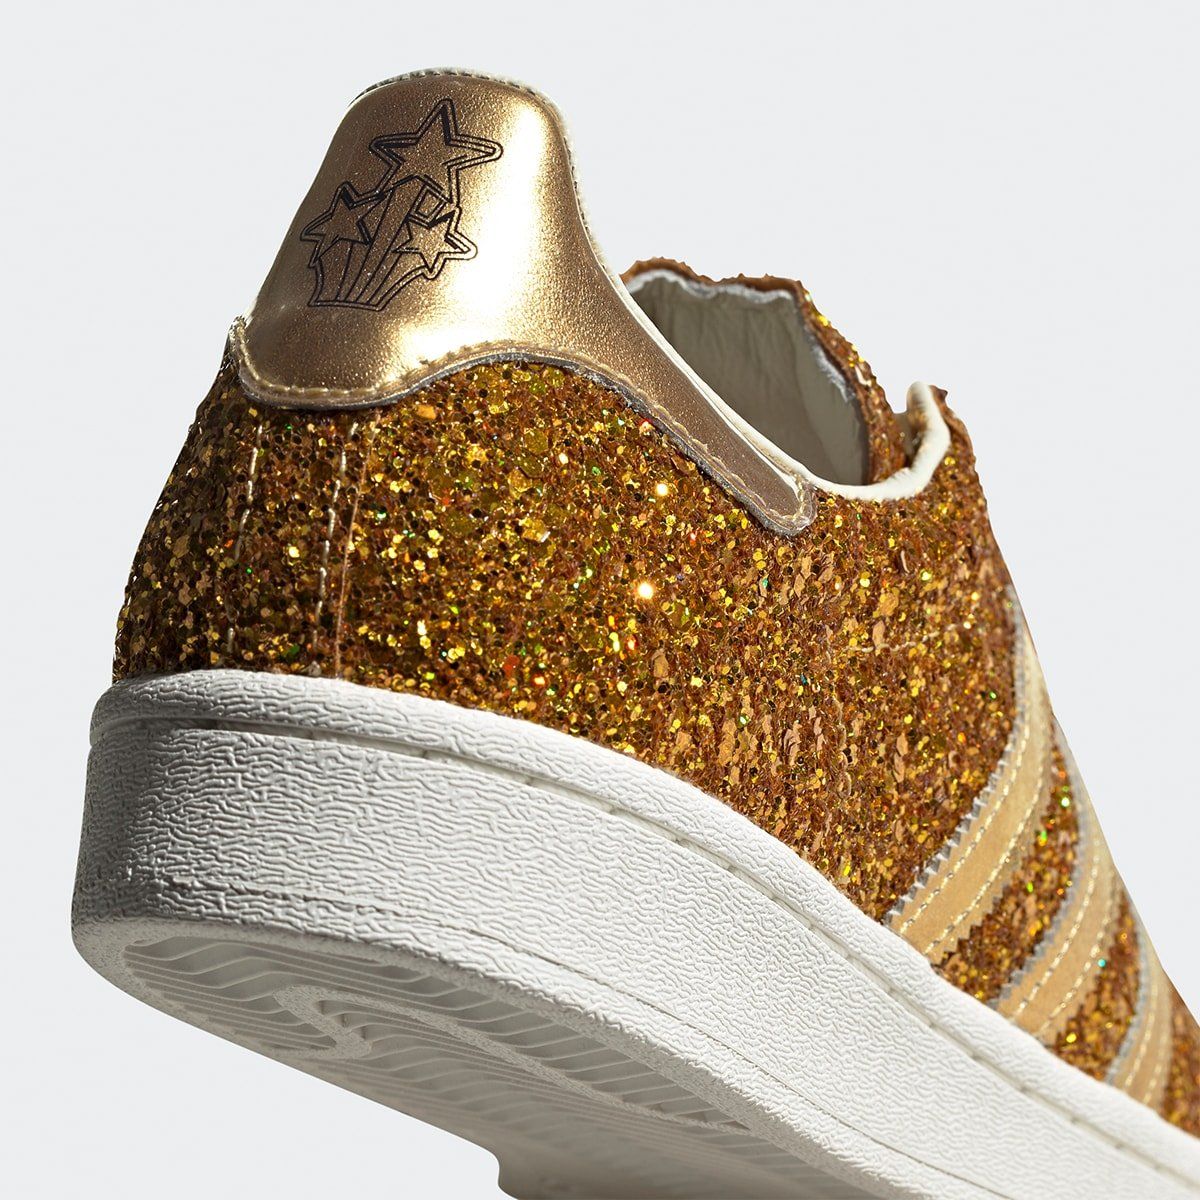 adidas superstar gold glitter